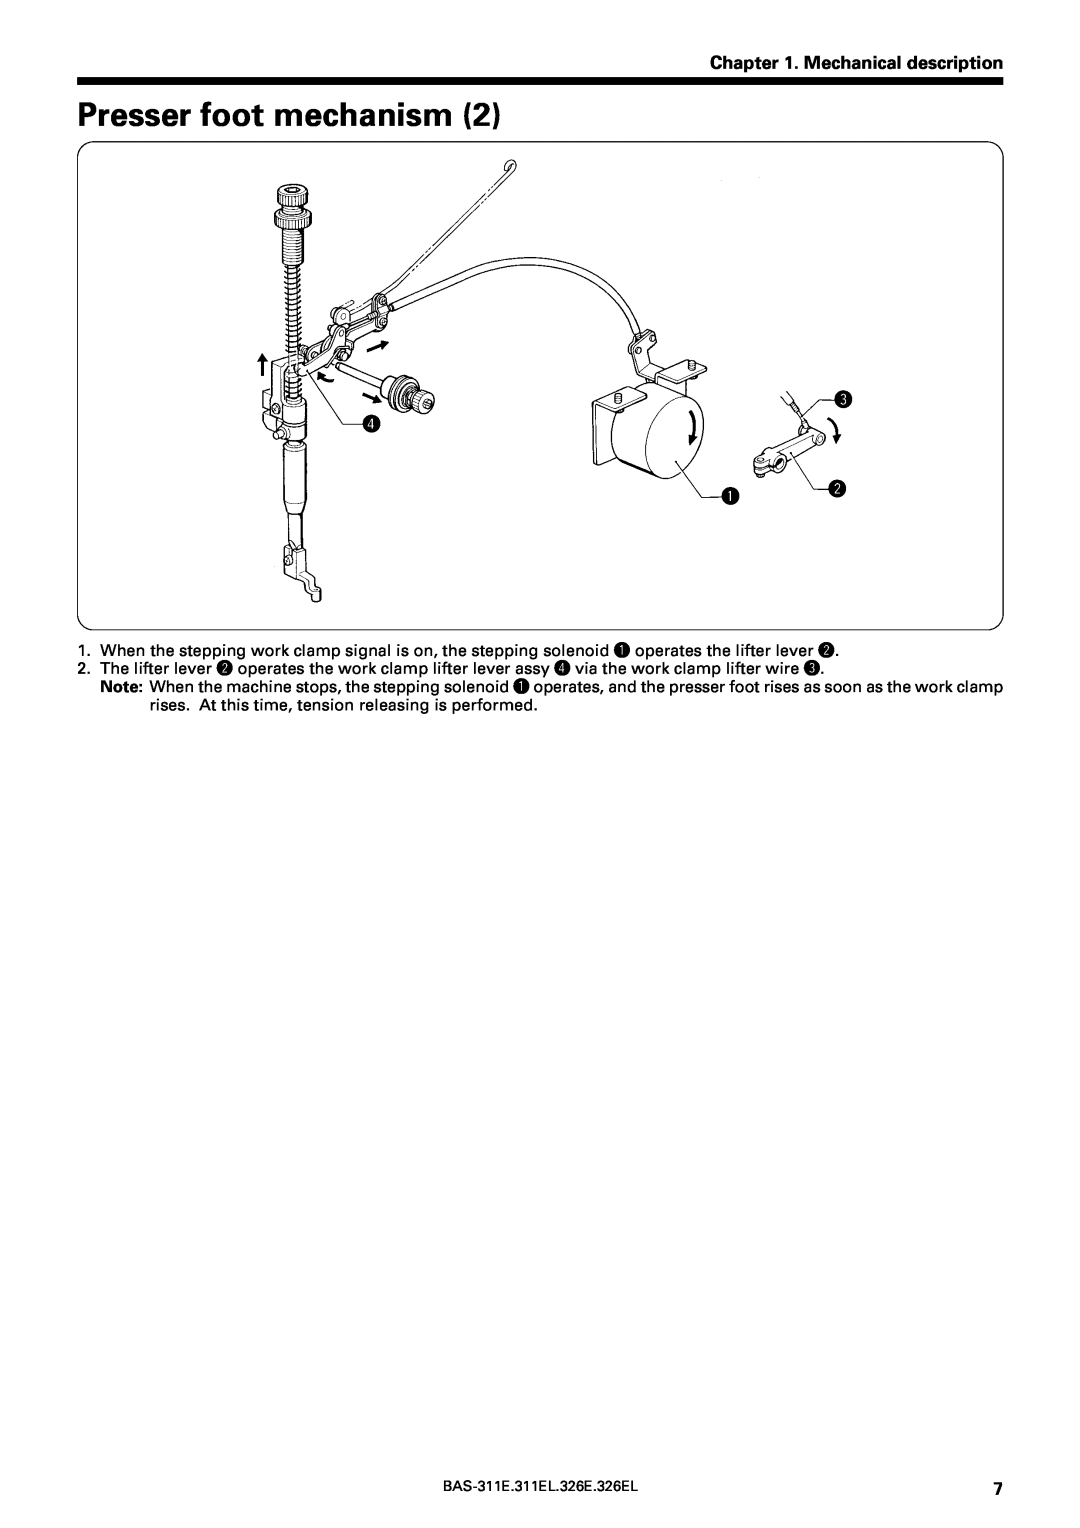 Brother BAS-311E service manual Presser foot mechanism, Mechanical description, e r q w 